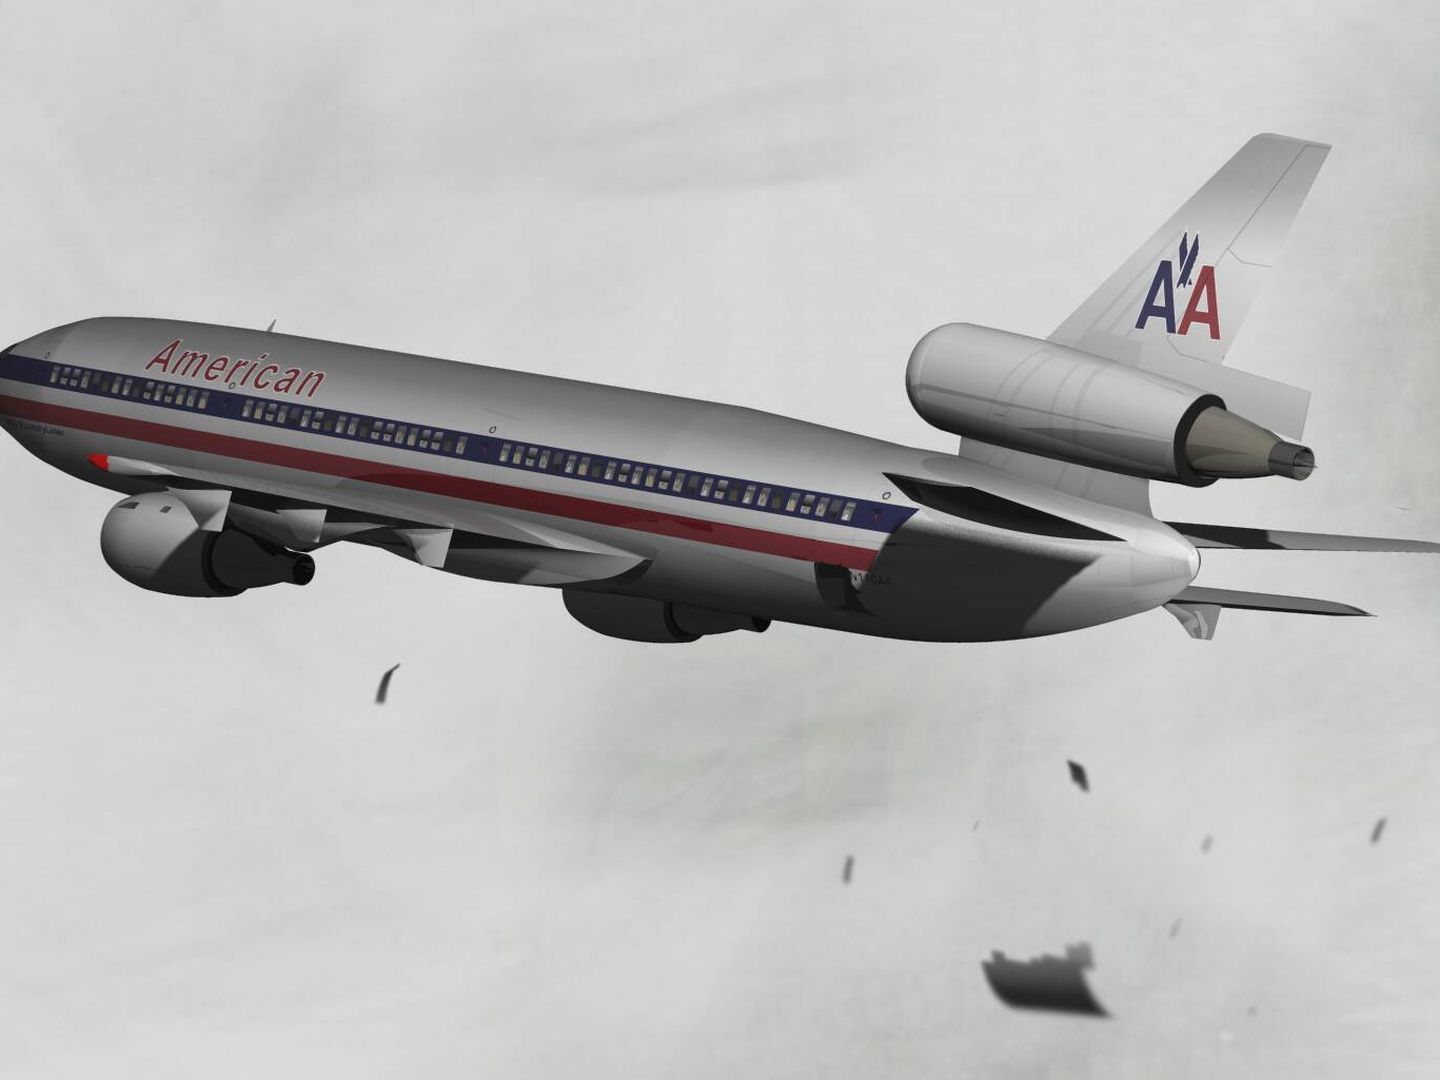 Imagen computarizada que muestra el momento en el que el avión pierde la puerta de carga. (Wikimedia)